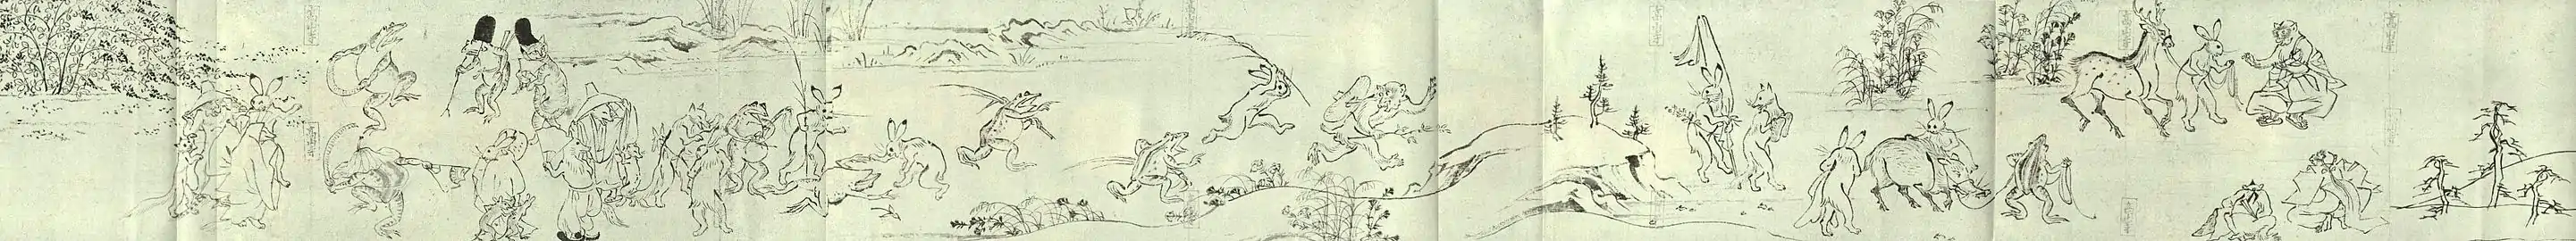 Succession de scènes peintes sans démarcation textuelle. Chōjū-giga, XIIe.